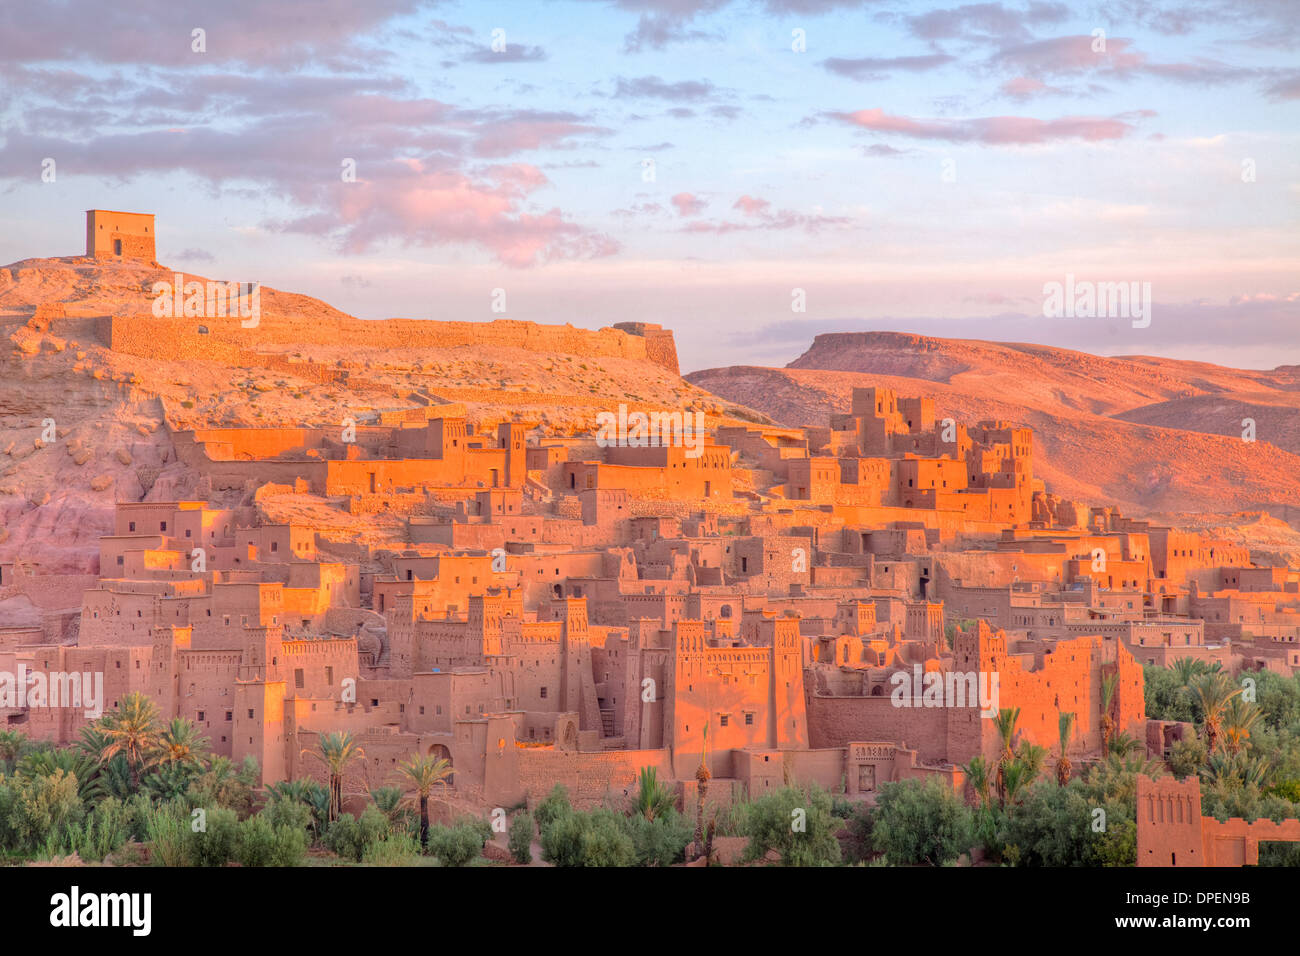 Ait Benhaddou, Maroc ancienne kasbah en pisé, désert du Sahara 1 000 ans de caravansérails, Site du patrimoine mondial de l'UNESCO Banque D'Images